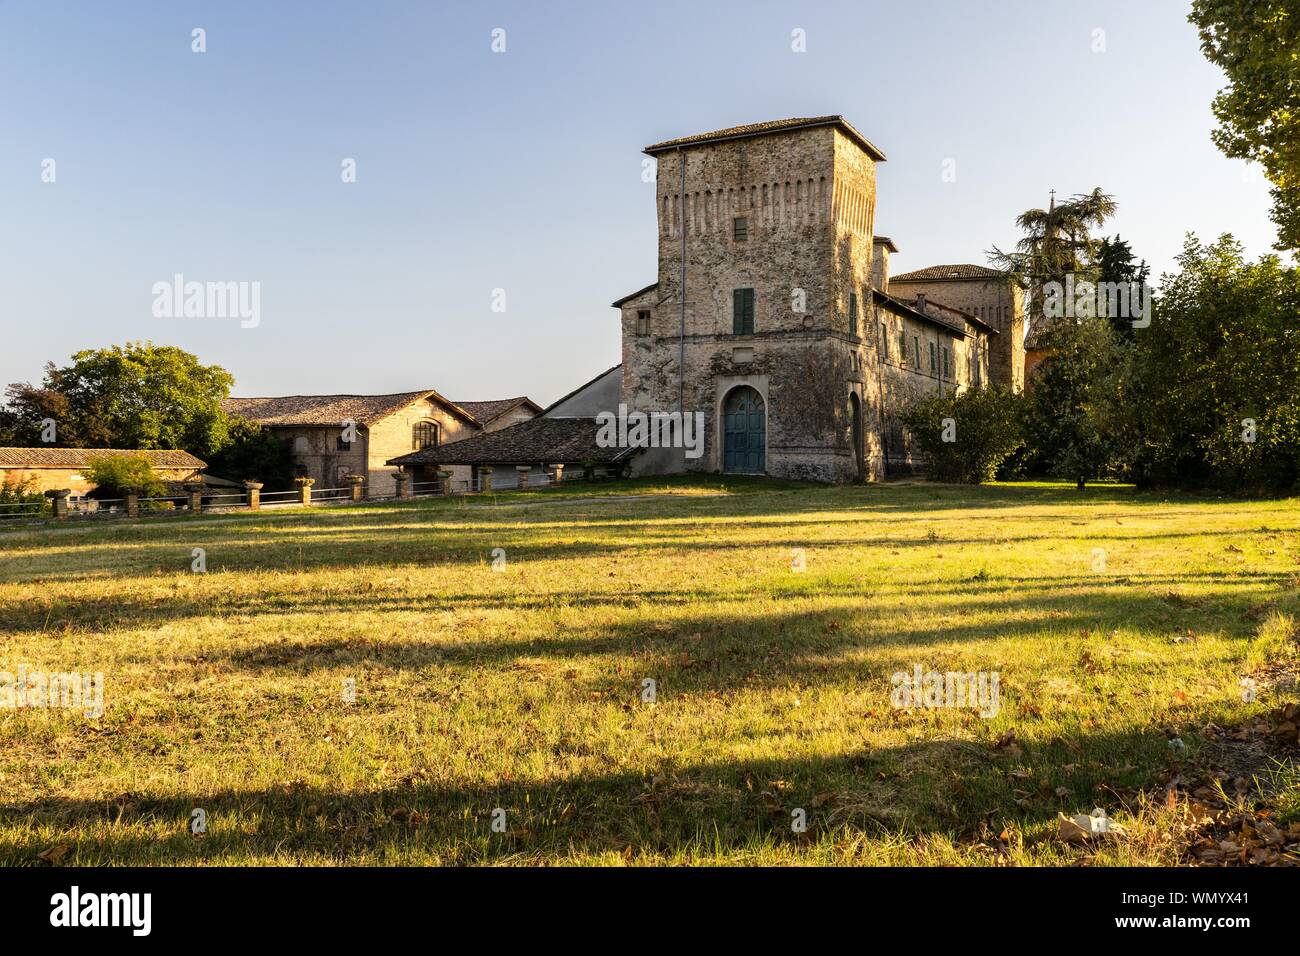 Ancien hôtel particulier, Castello di Panocchia, Panocchia, Province de Parme, Emilie-Romagne, Italie Banque D'Images